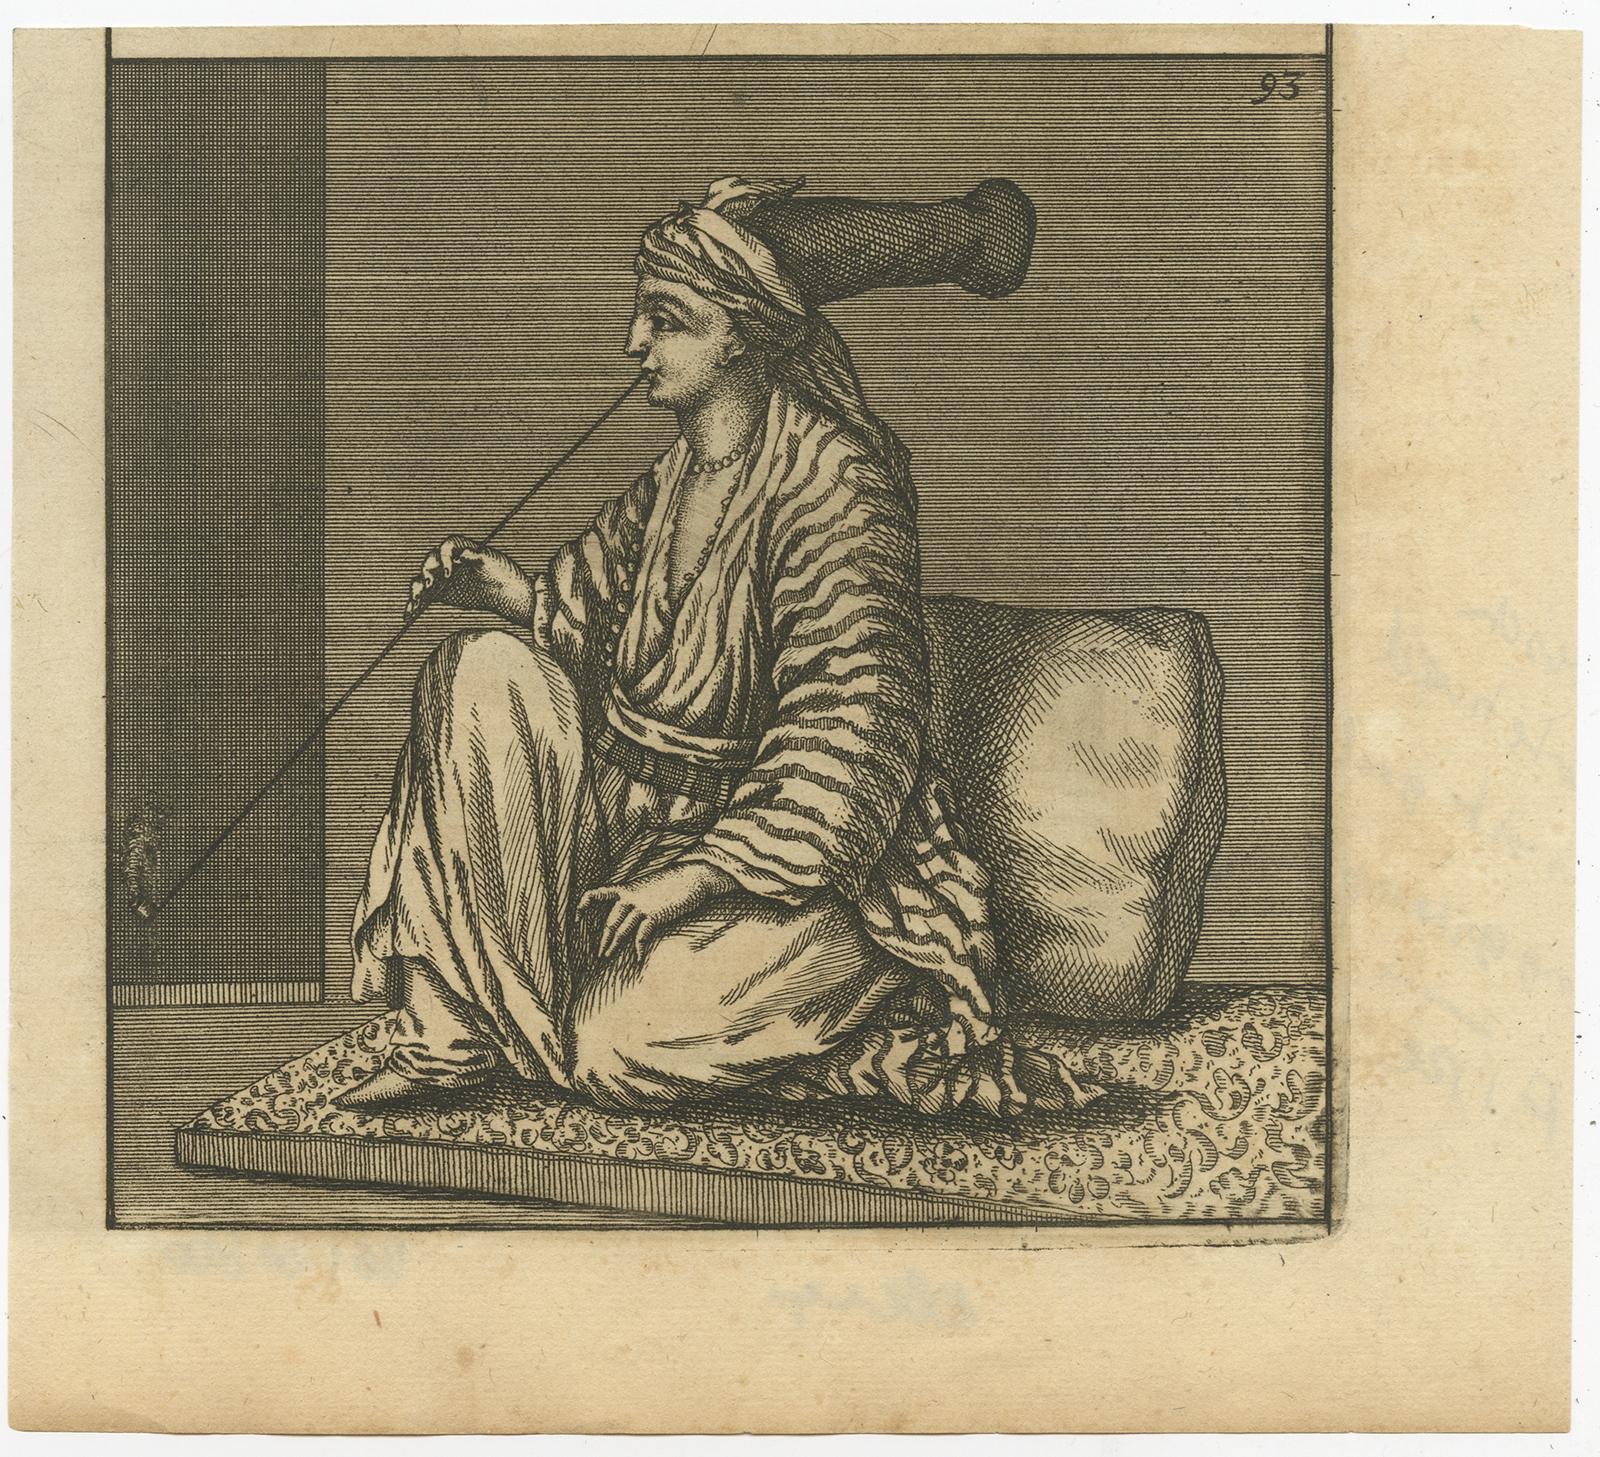 Impression sans titre d'un Arabe fumant la pipe, assis sur un tapis. 

Cette gravure provient de 